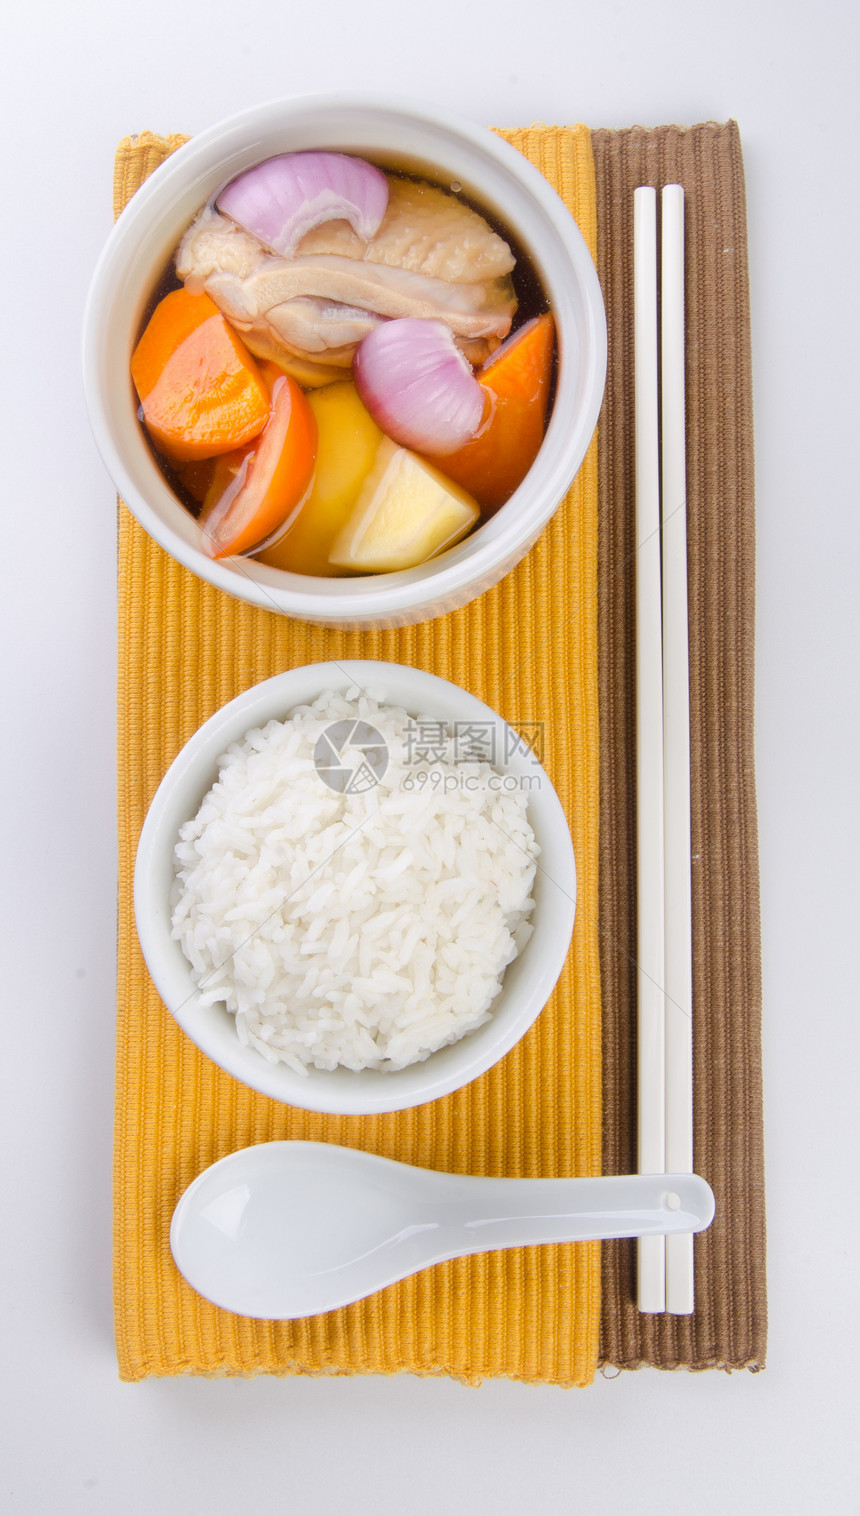 鸡肉汤和香草汤 在锅 中国食品风格午餐胡椒蒸汽食物装饰品草本植物格子用餐萝卜传统图片